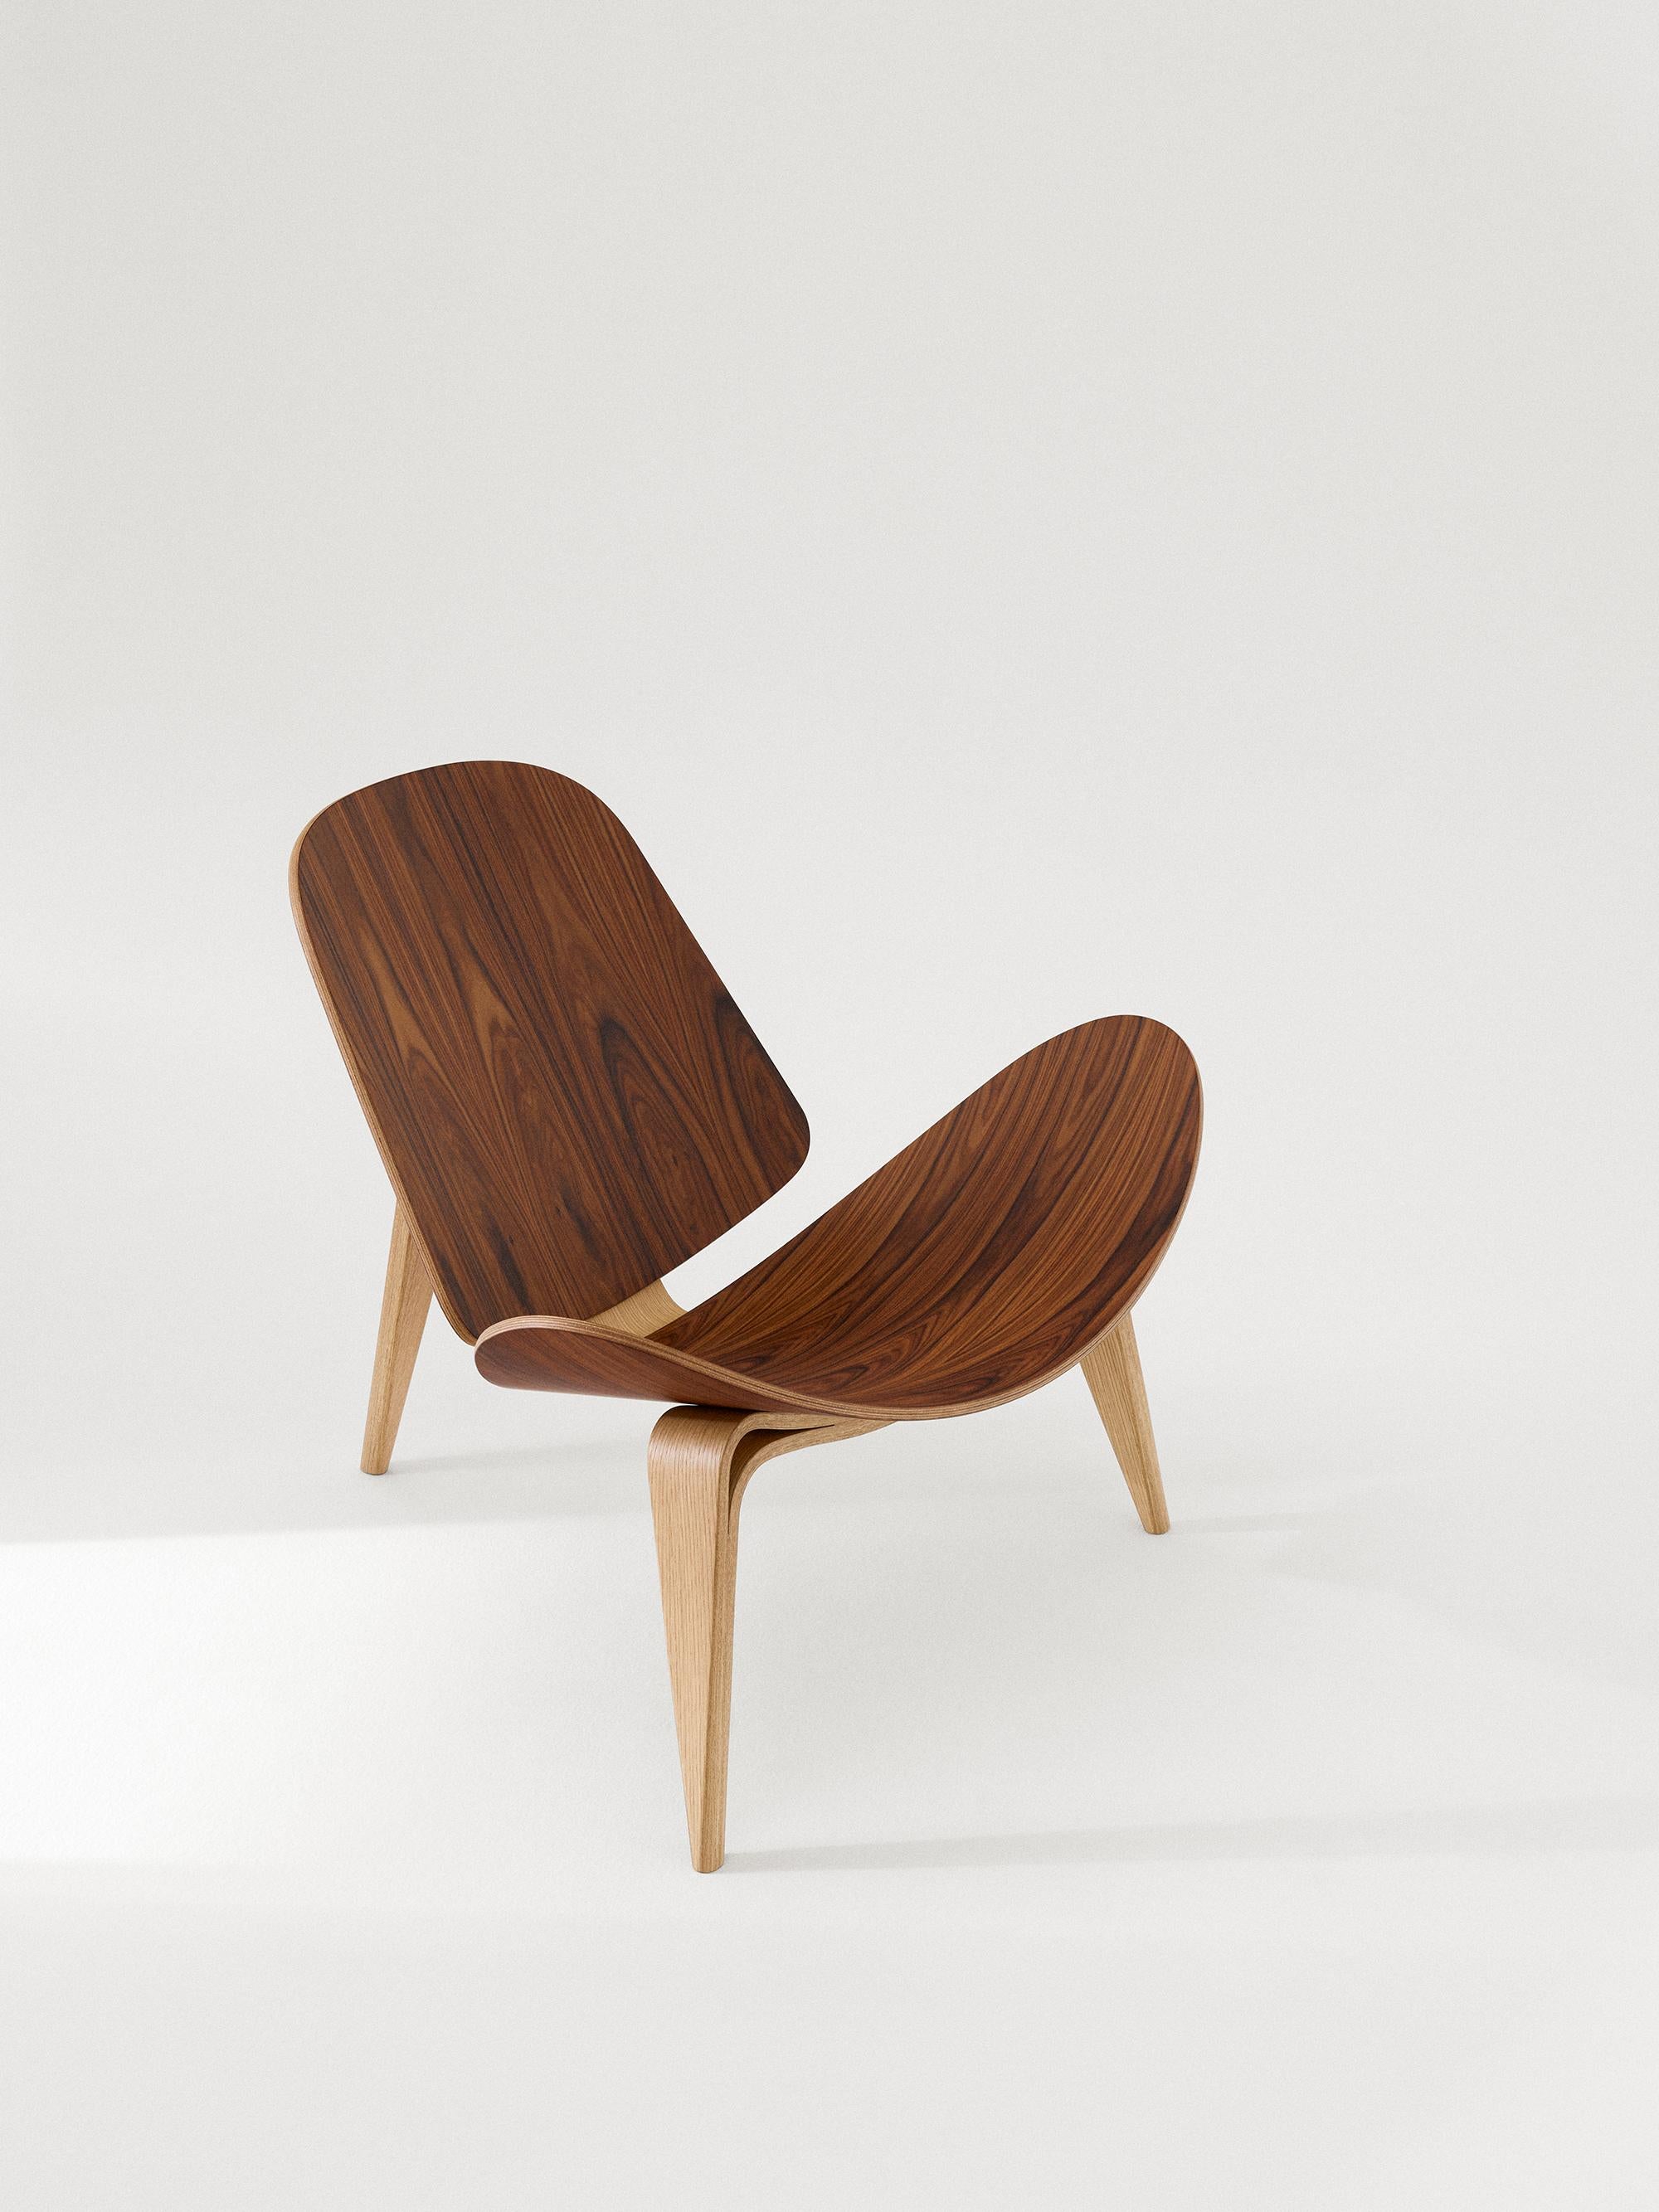 Hans J. Wegner 'CH07 Shell' 60th Anniversary Lounge Chair für Carl Hansen & Son.

Die Geschichte der dänischen Moderne beginnt im Jahr 1908, als Carl Hansen seine erste Werkstatt eröffnet. Sein Engagement für Schönheit, Komfort, Raffinesse und